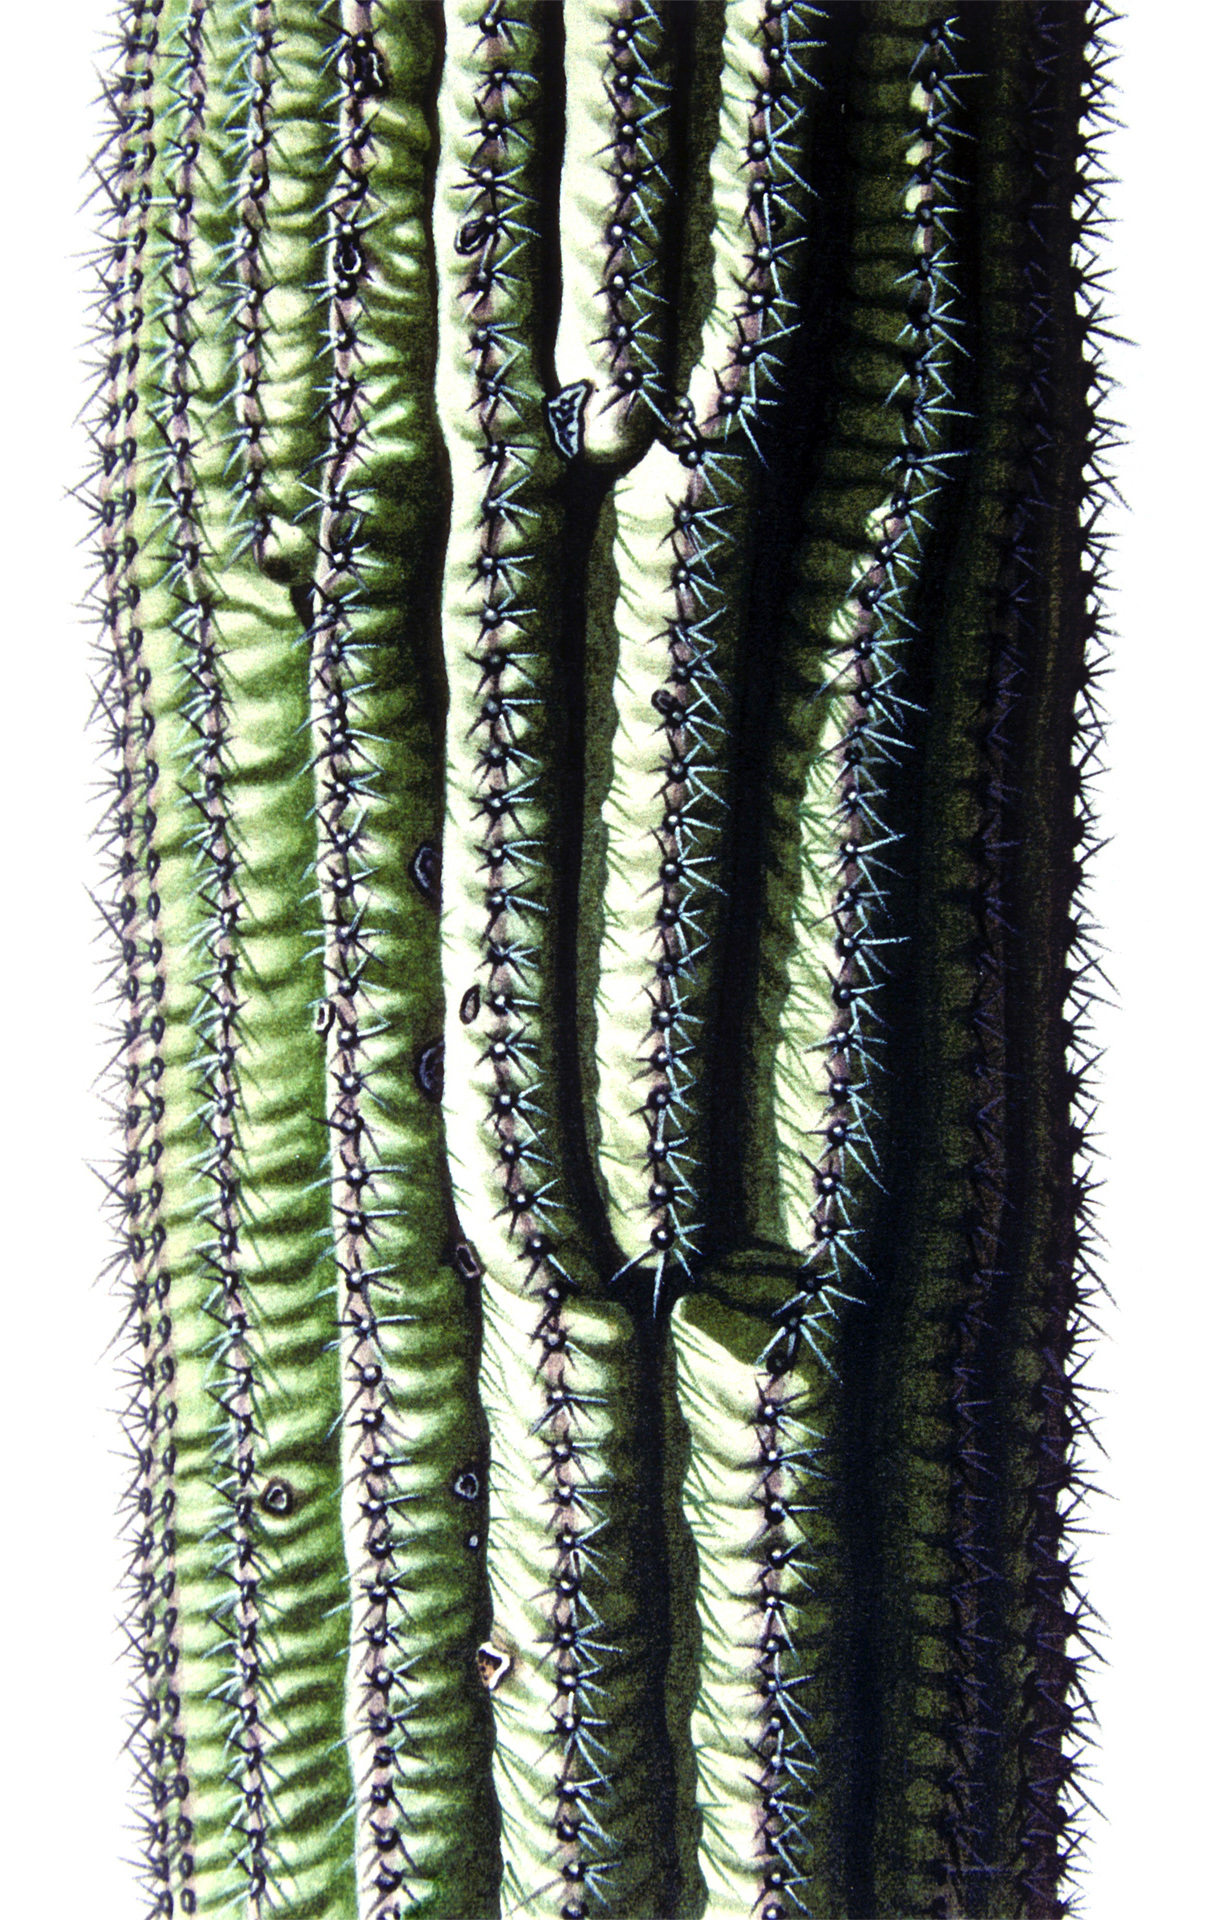 Saguaro-Stamm lV, 2008, Aquarell und Farbstift auf Papier, 28 x 22 cm